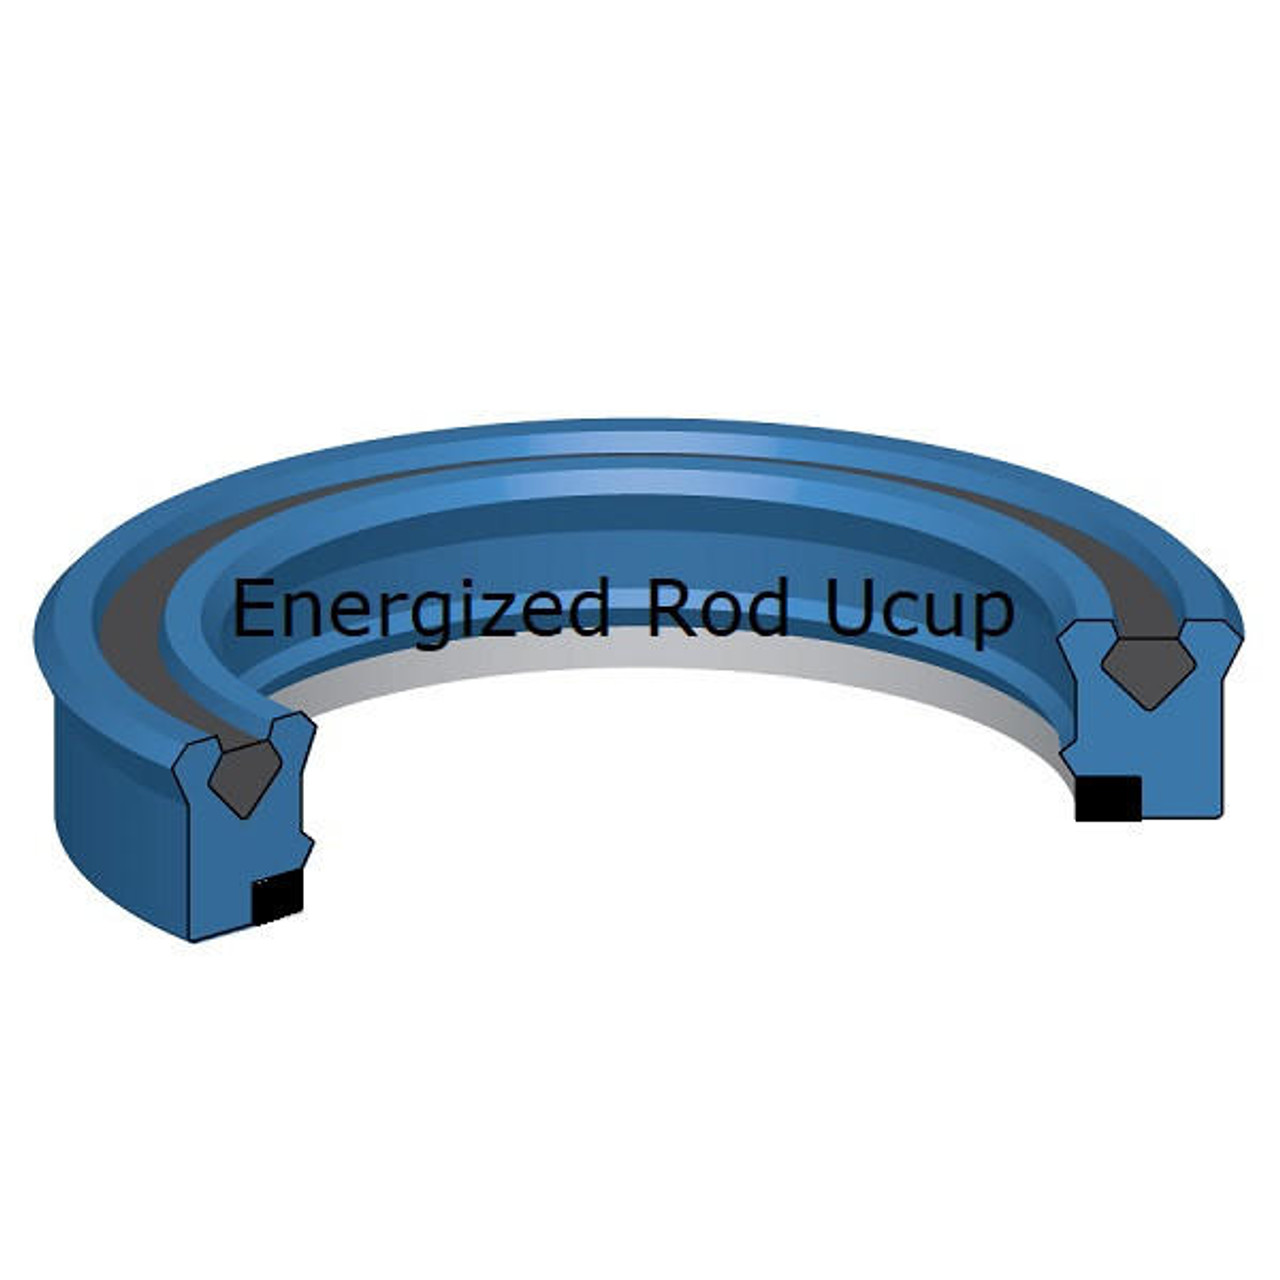 Energized Rod U cup 45mm ID x 55mm OD x 7.3mm Seal  10,000 PSI